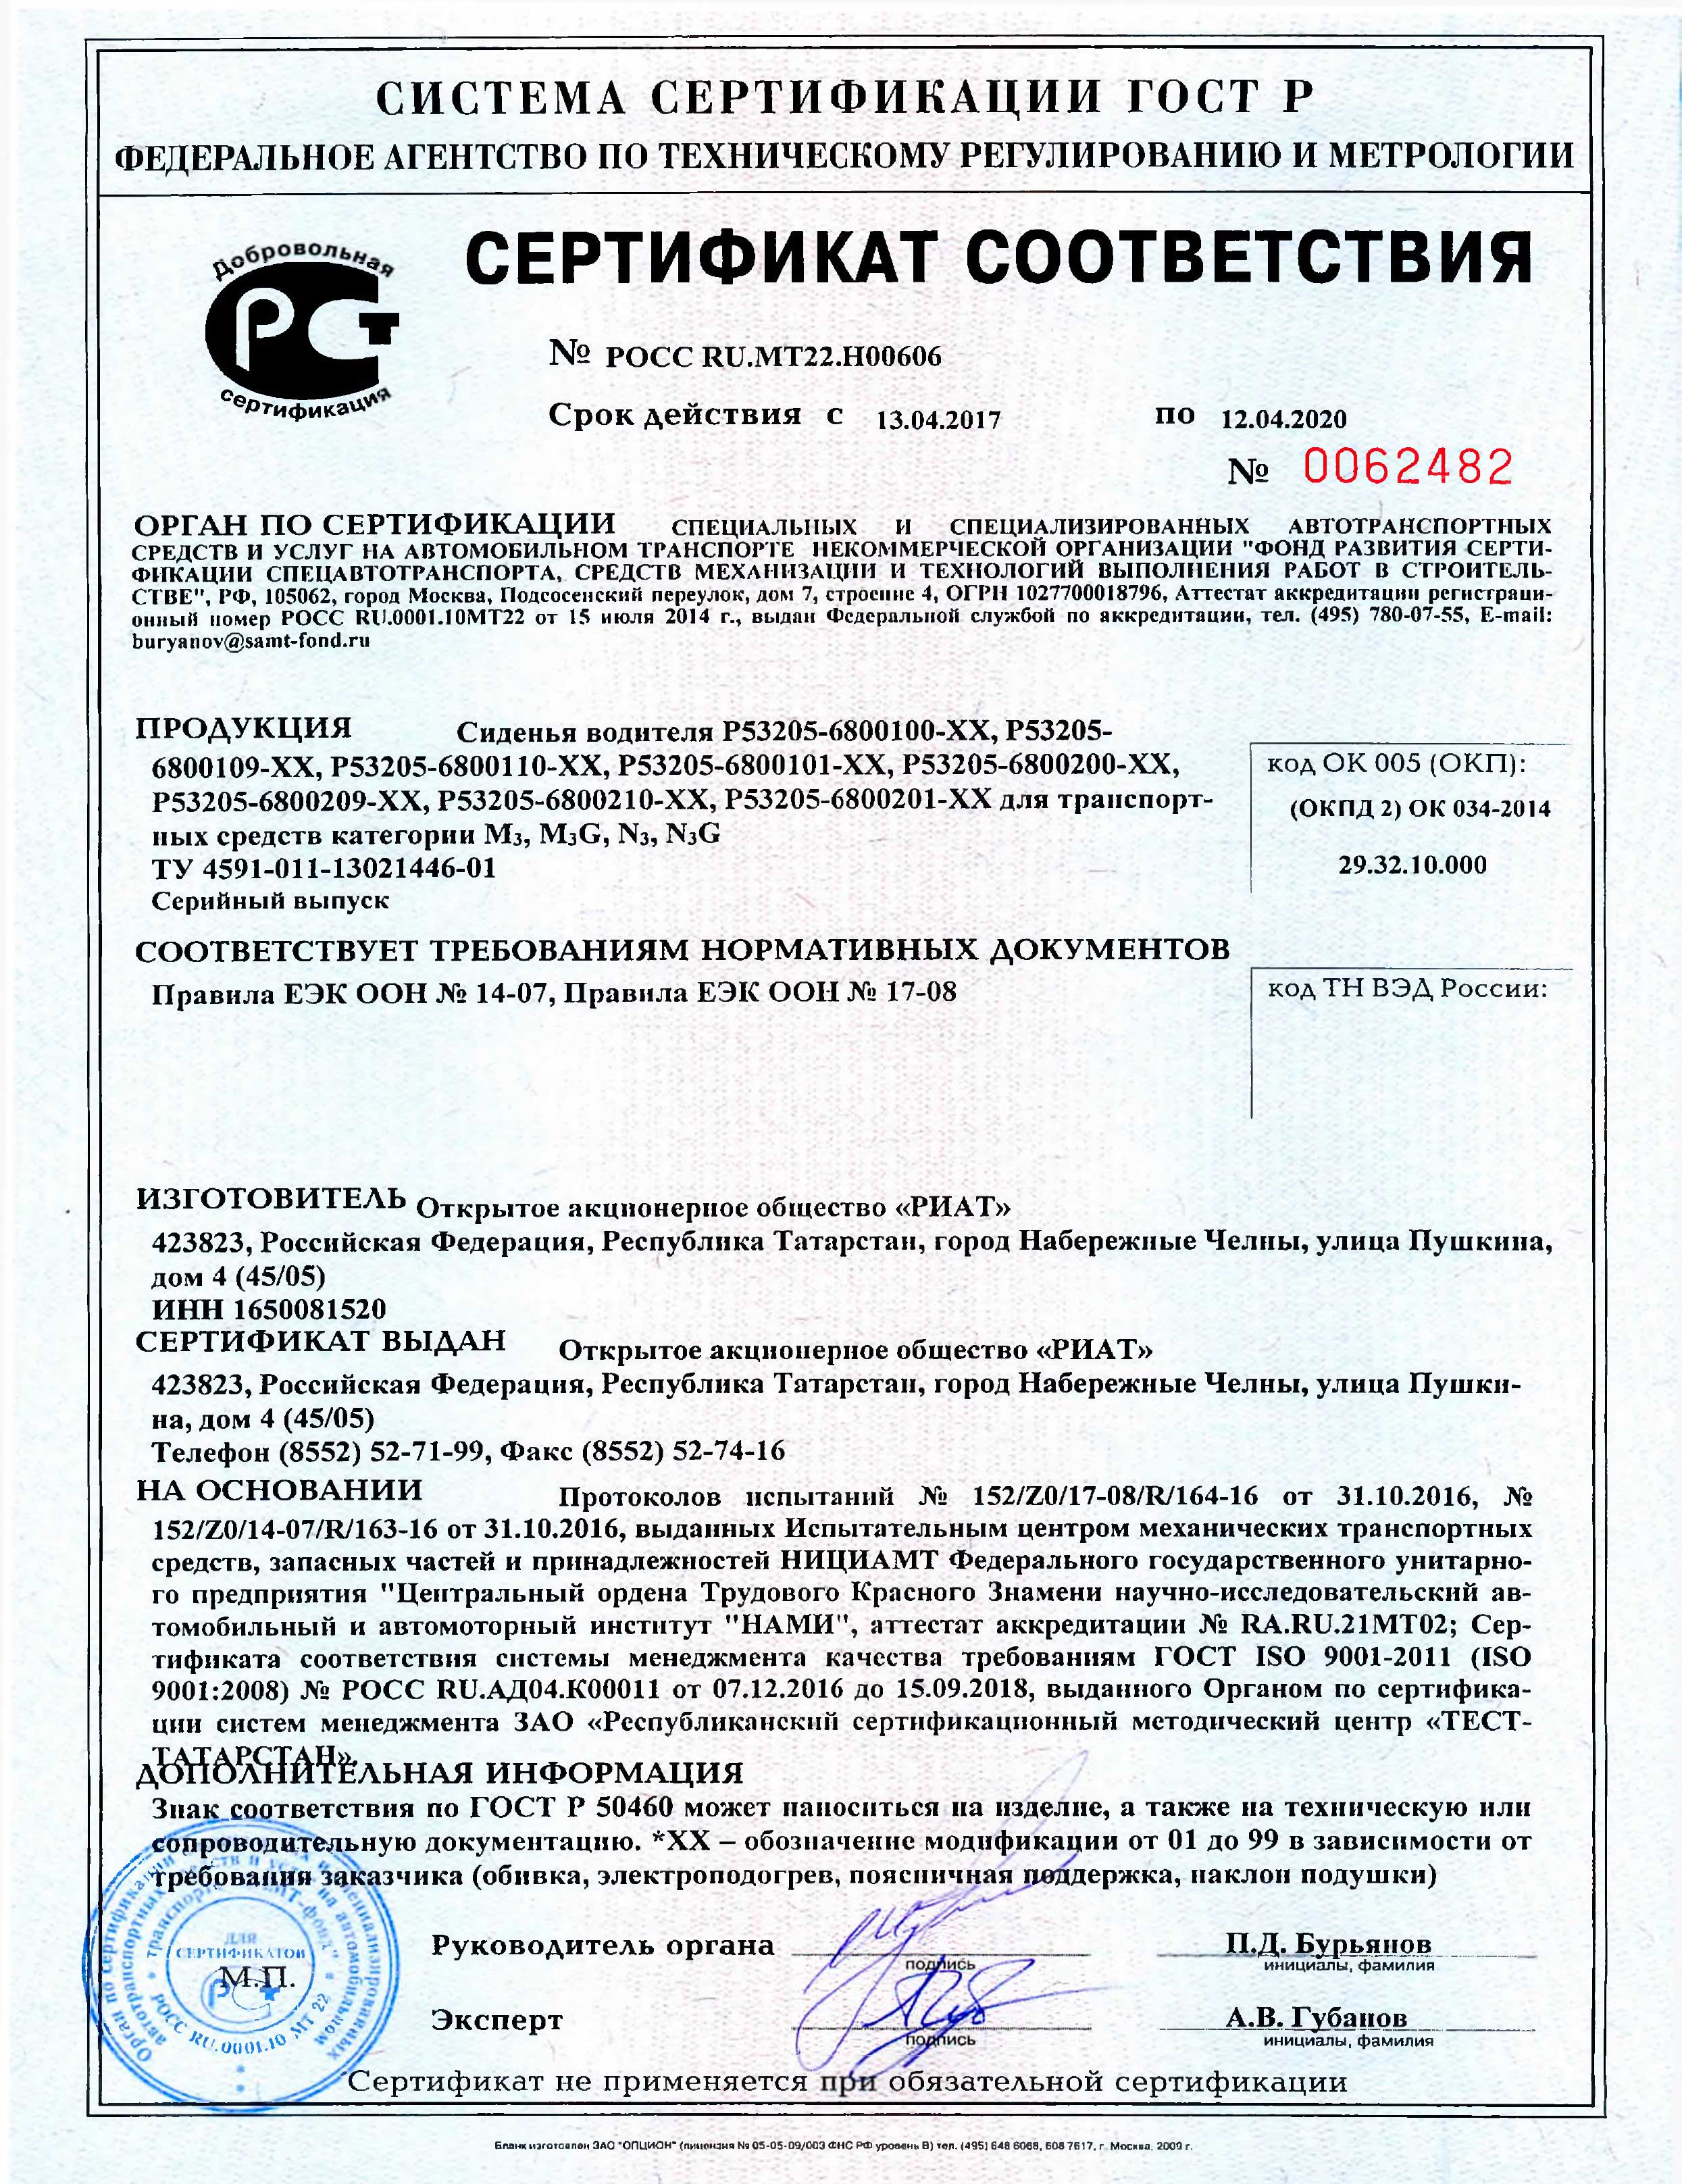 Сертификат сиденья РИАТ POCC-RU.MT22.H00606